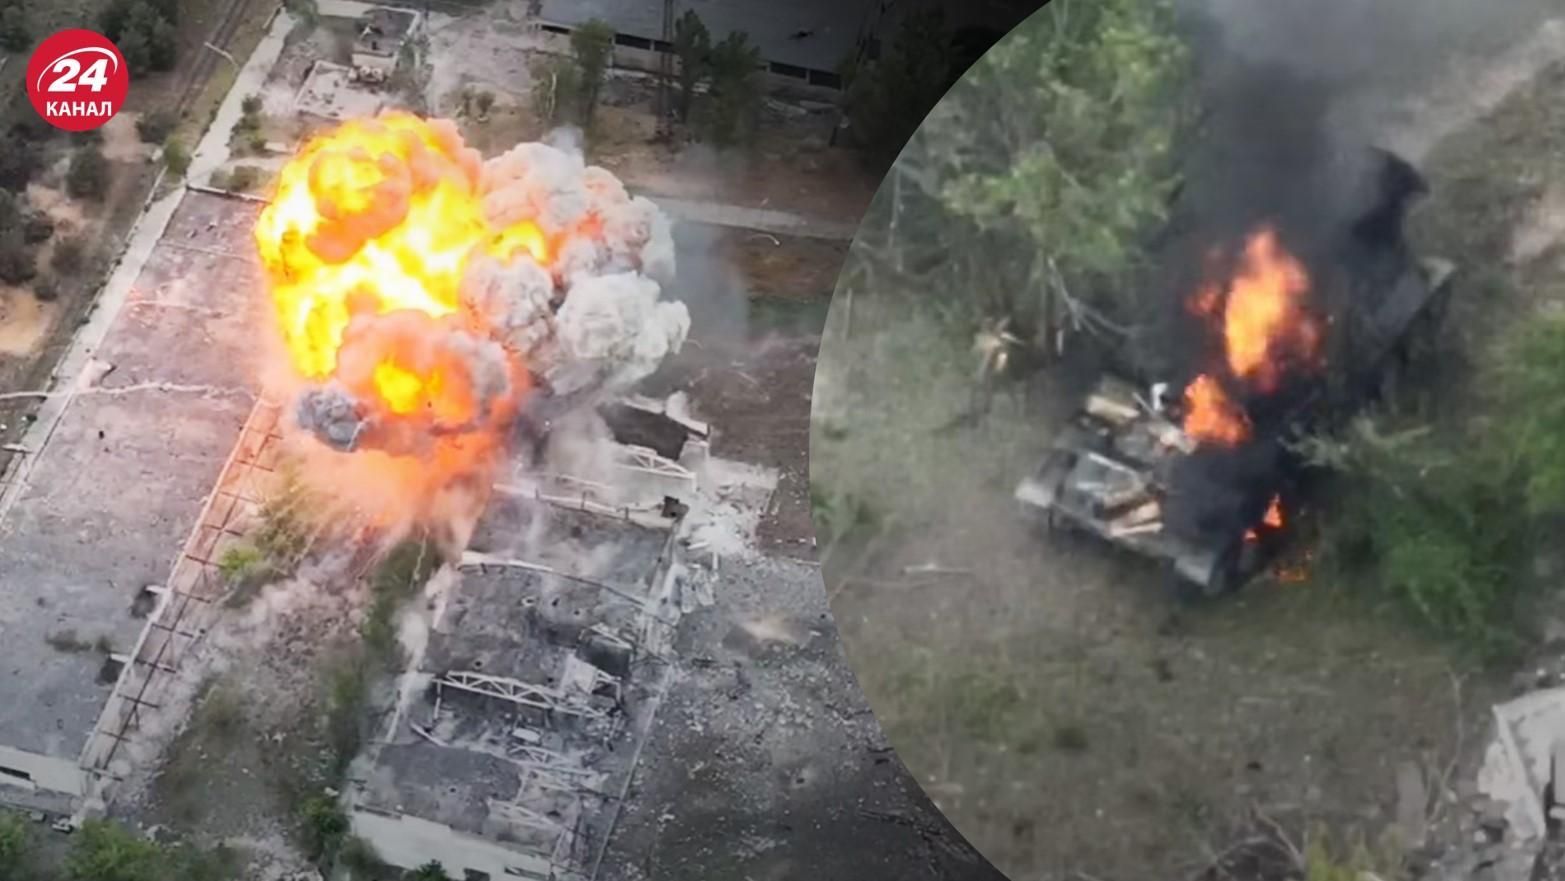 Потери России - разведчики уничтожили редкую РЛС Репешок и показали видео - 24 Канал